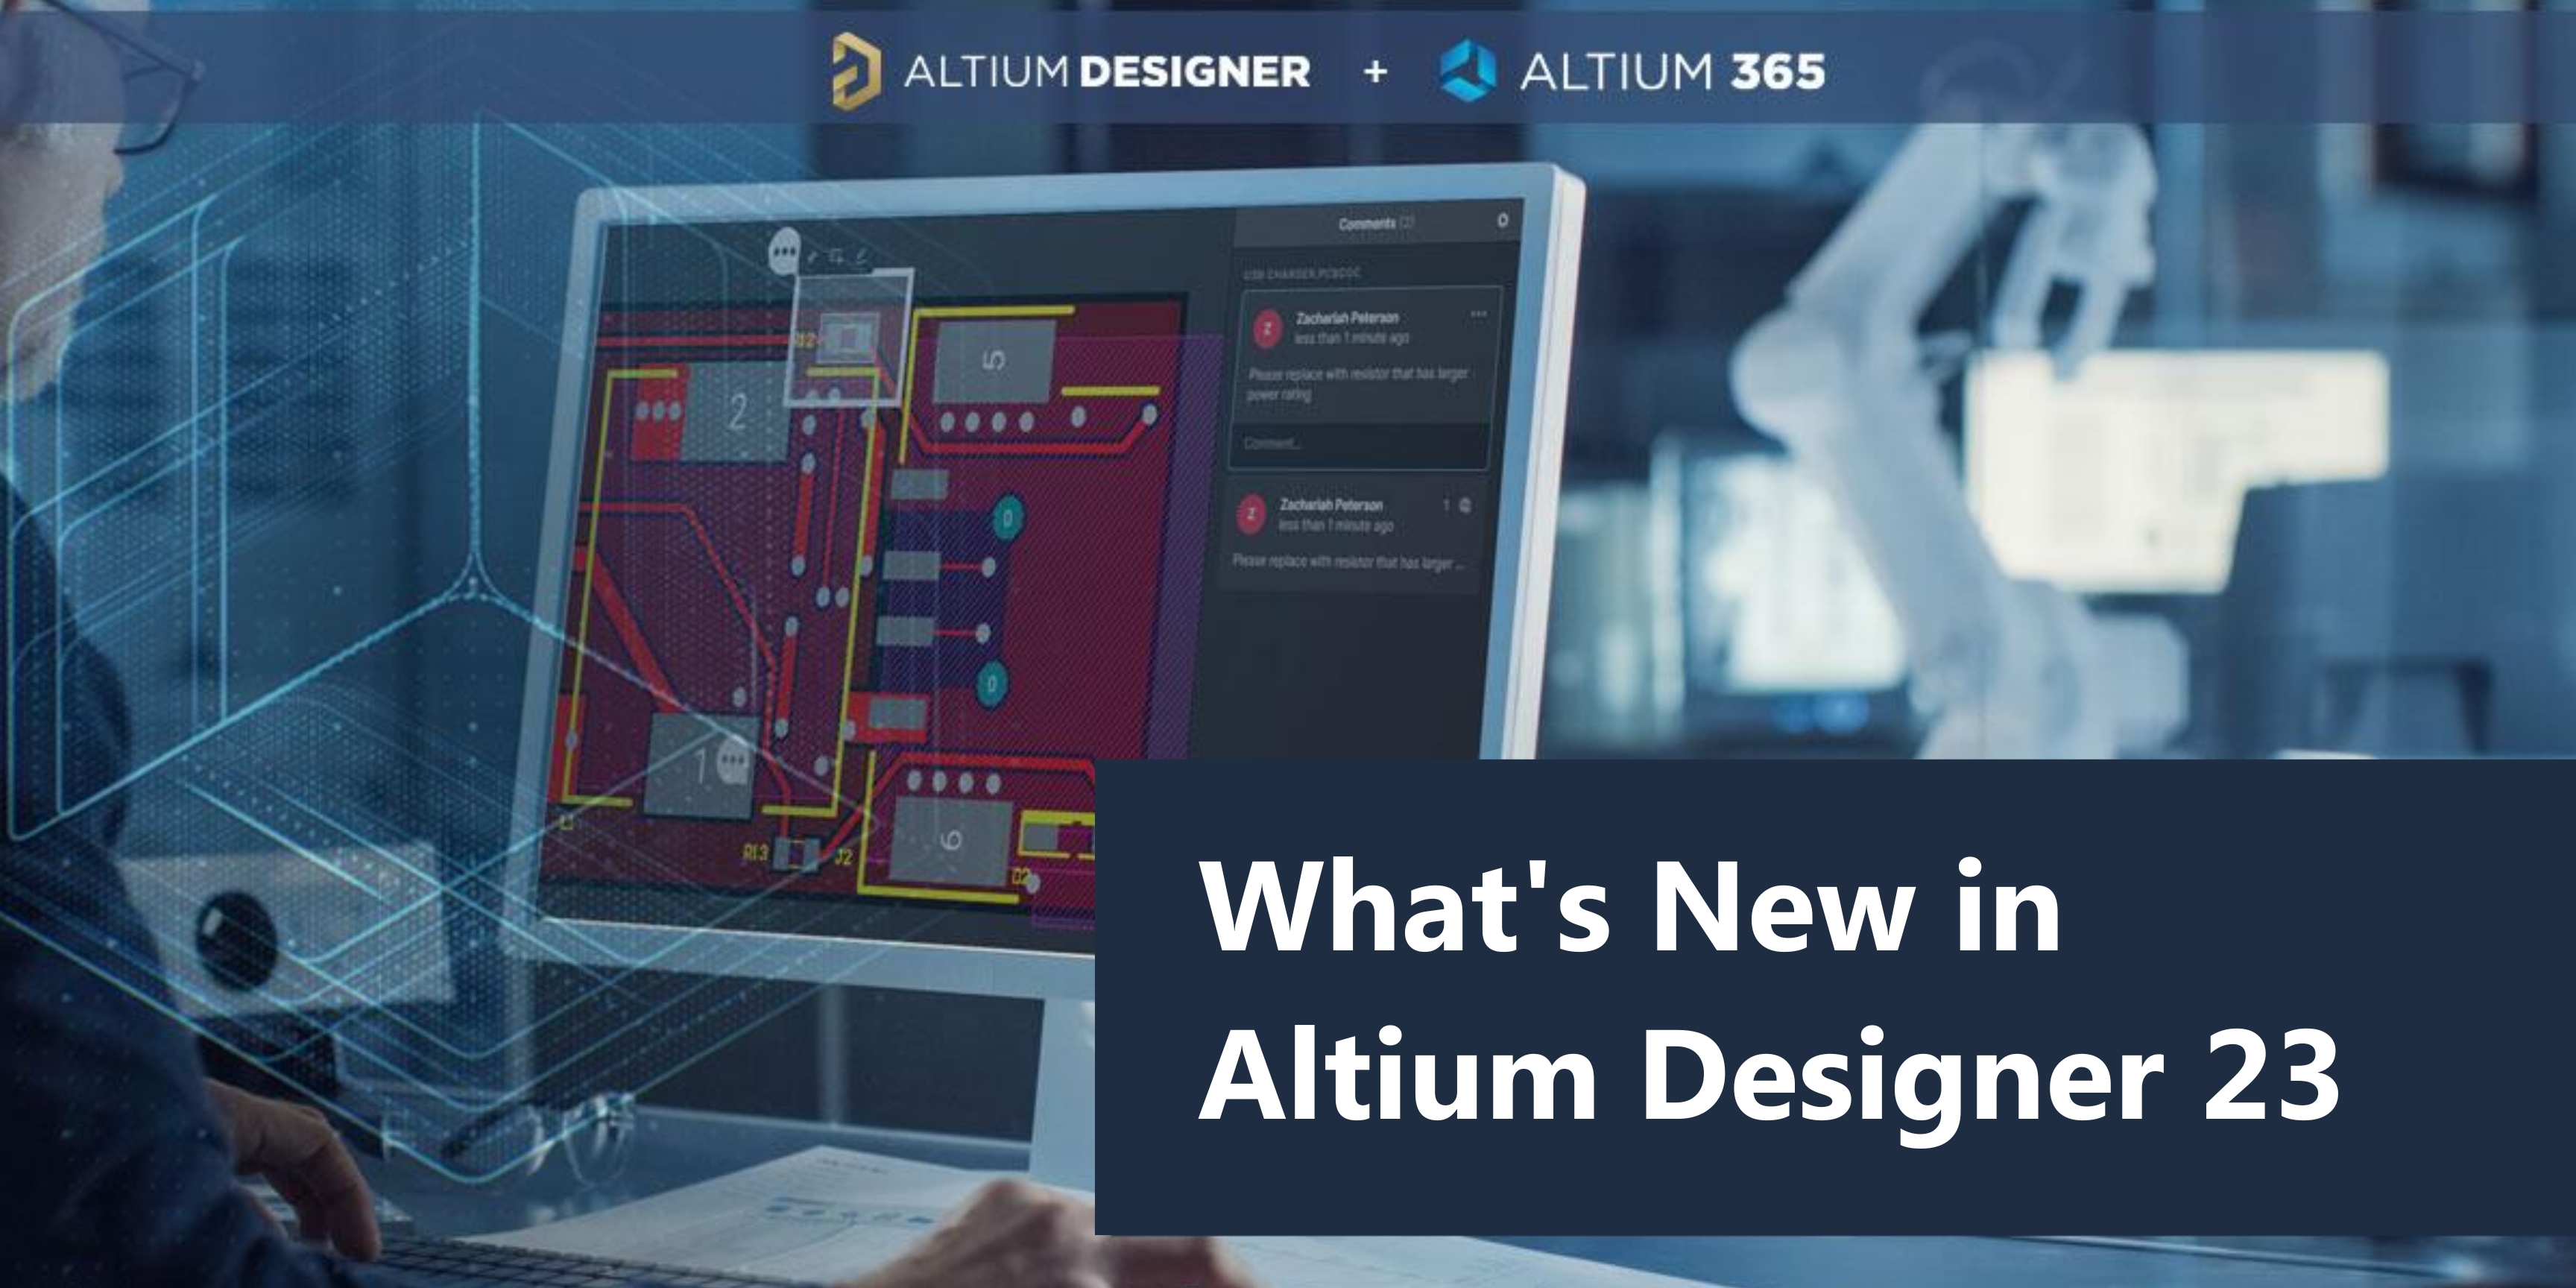 Altium Designer 23.9.2.47 download the new version for mac